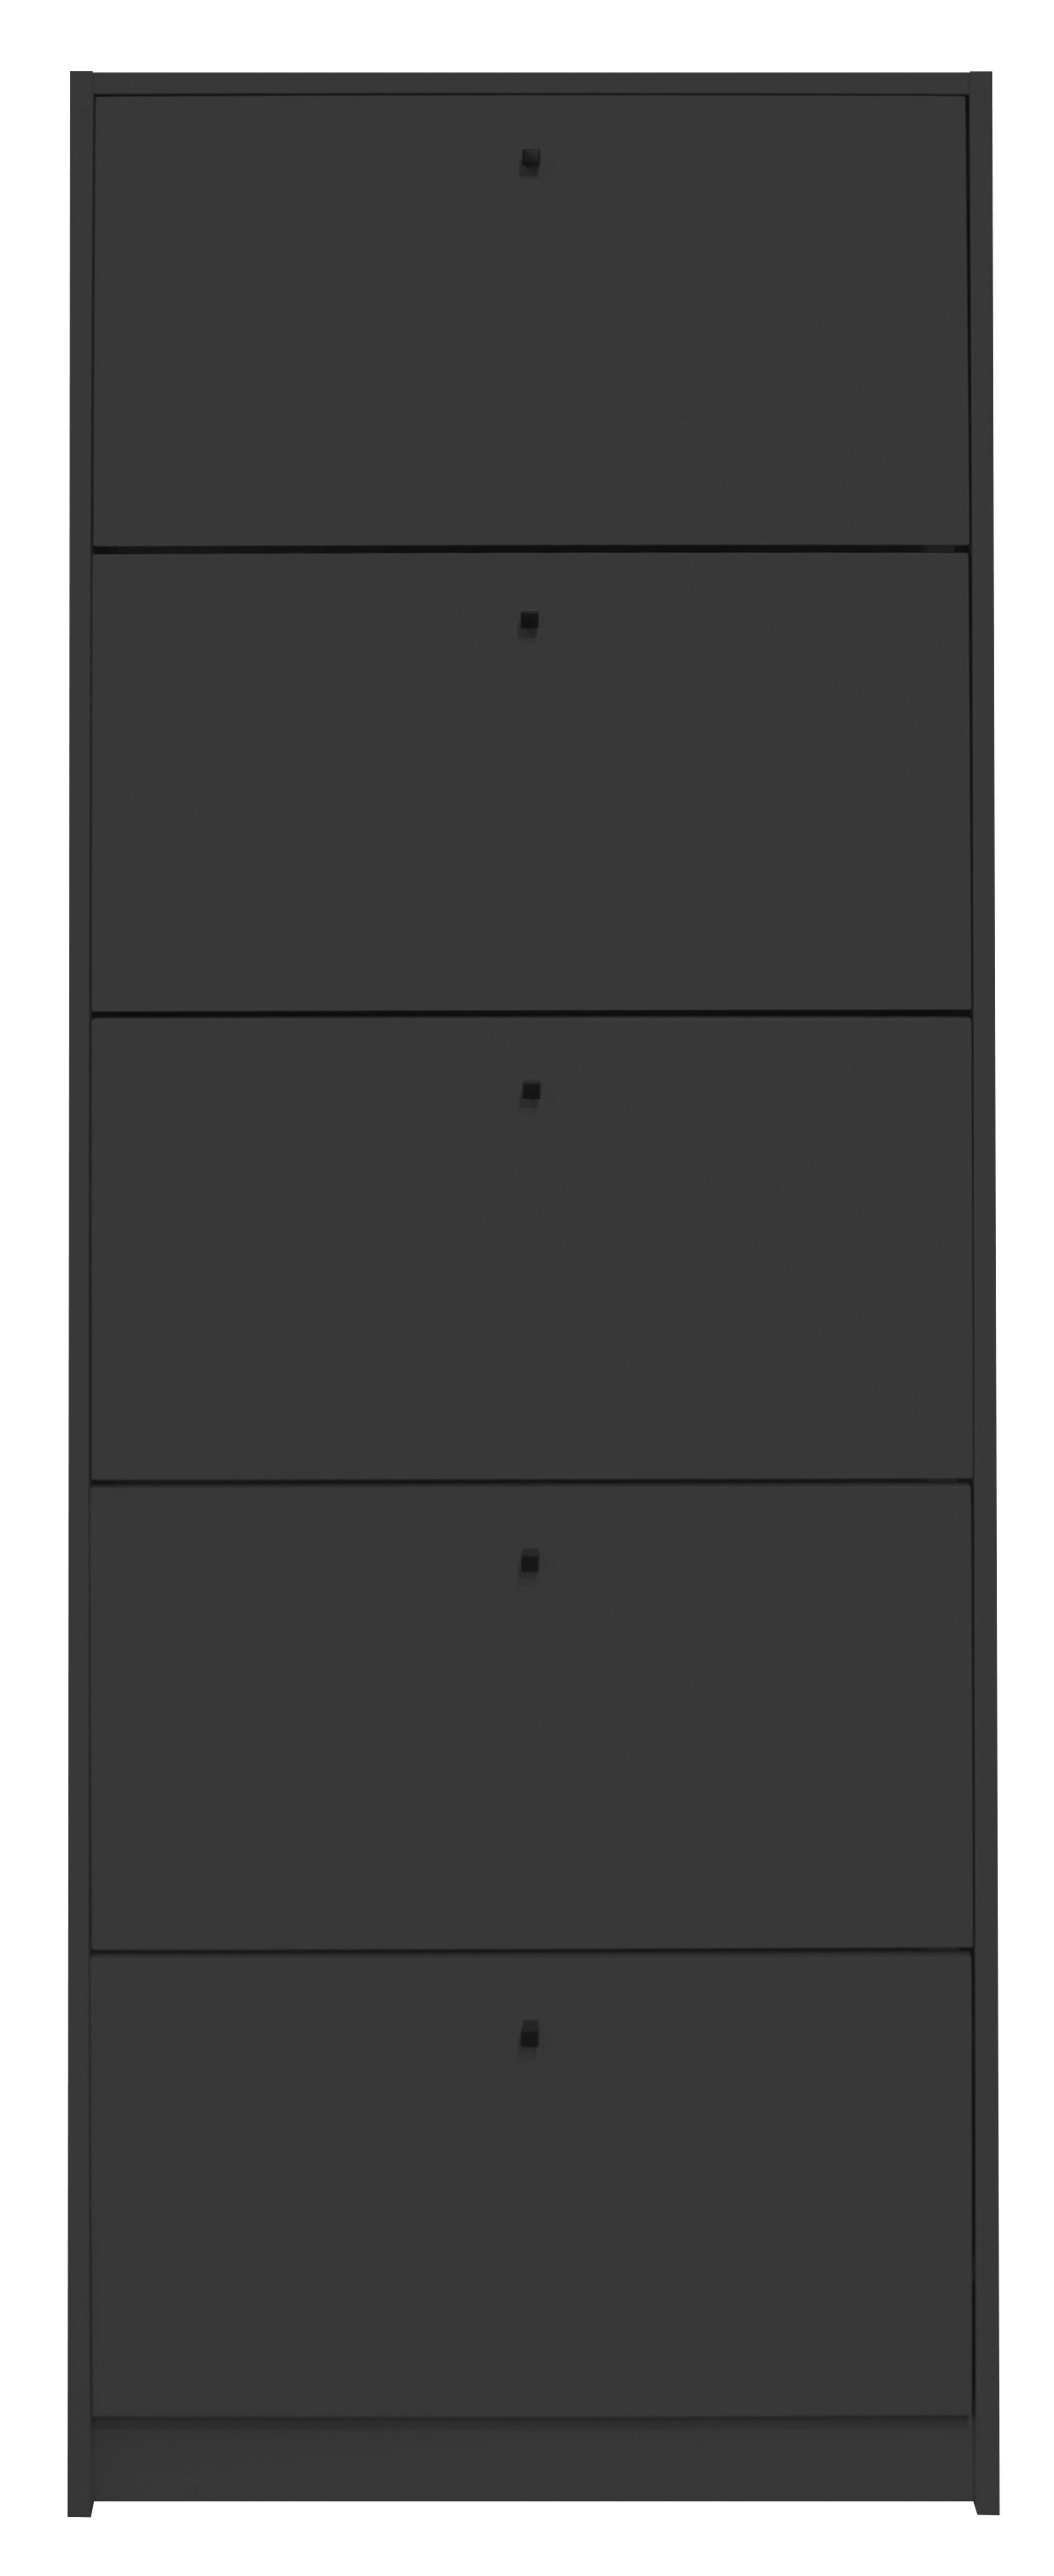 Omara Z Loputami Za Čevlje Flap, Antracit - črna/antracit, Moderno, kovina/leseni material (60/168/16cm) - Modern Living